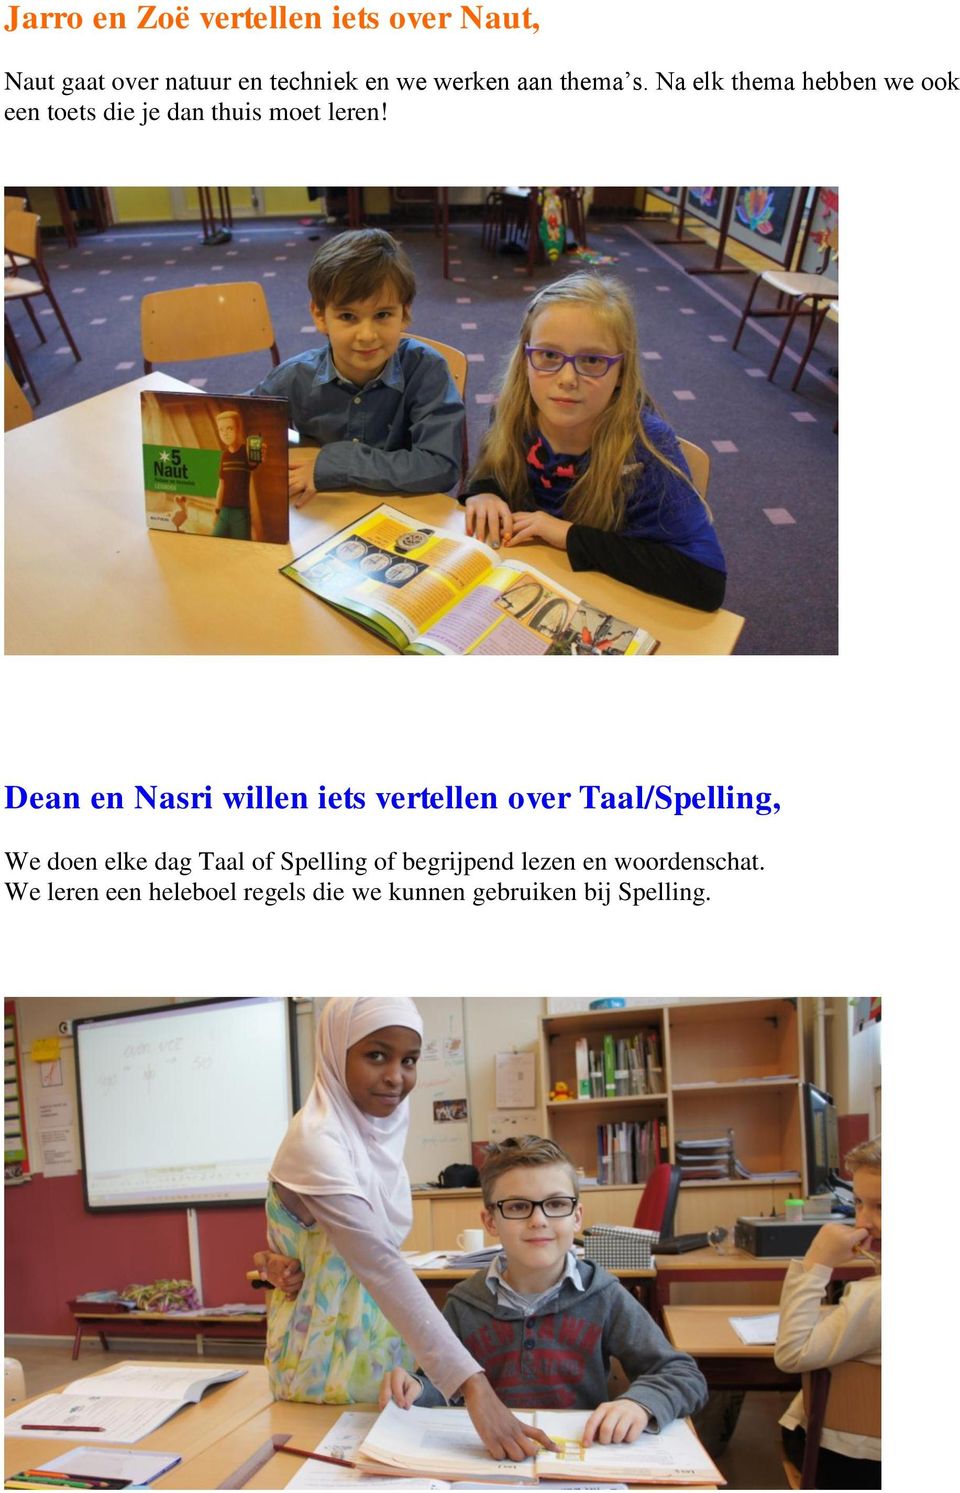 Dean en Nasri willen iets vertellen over Taal/Spelling, We doen elke dag Taal of Spelling